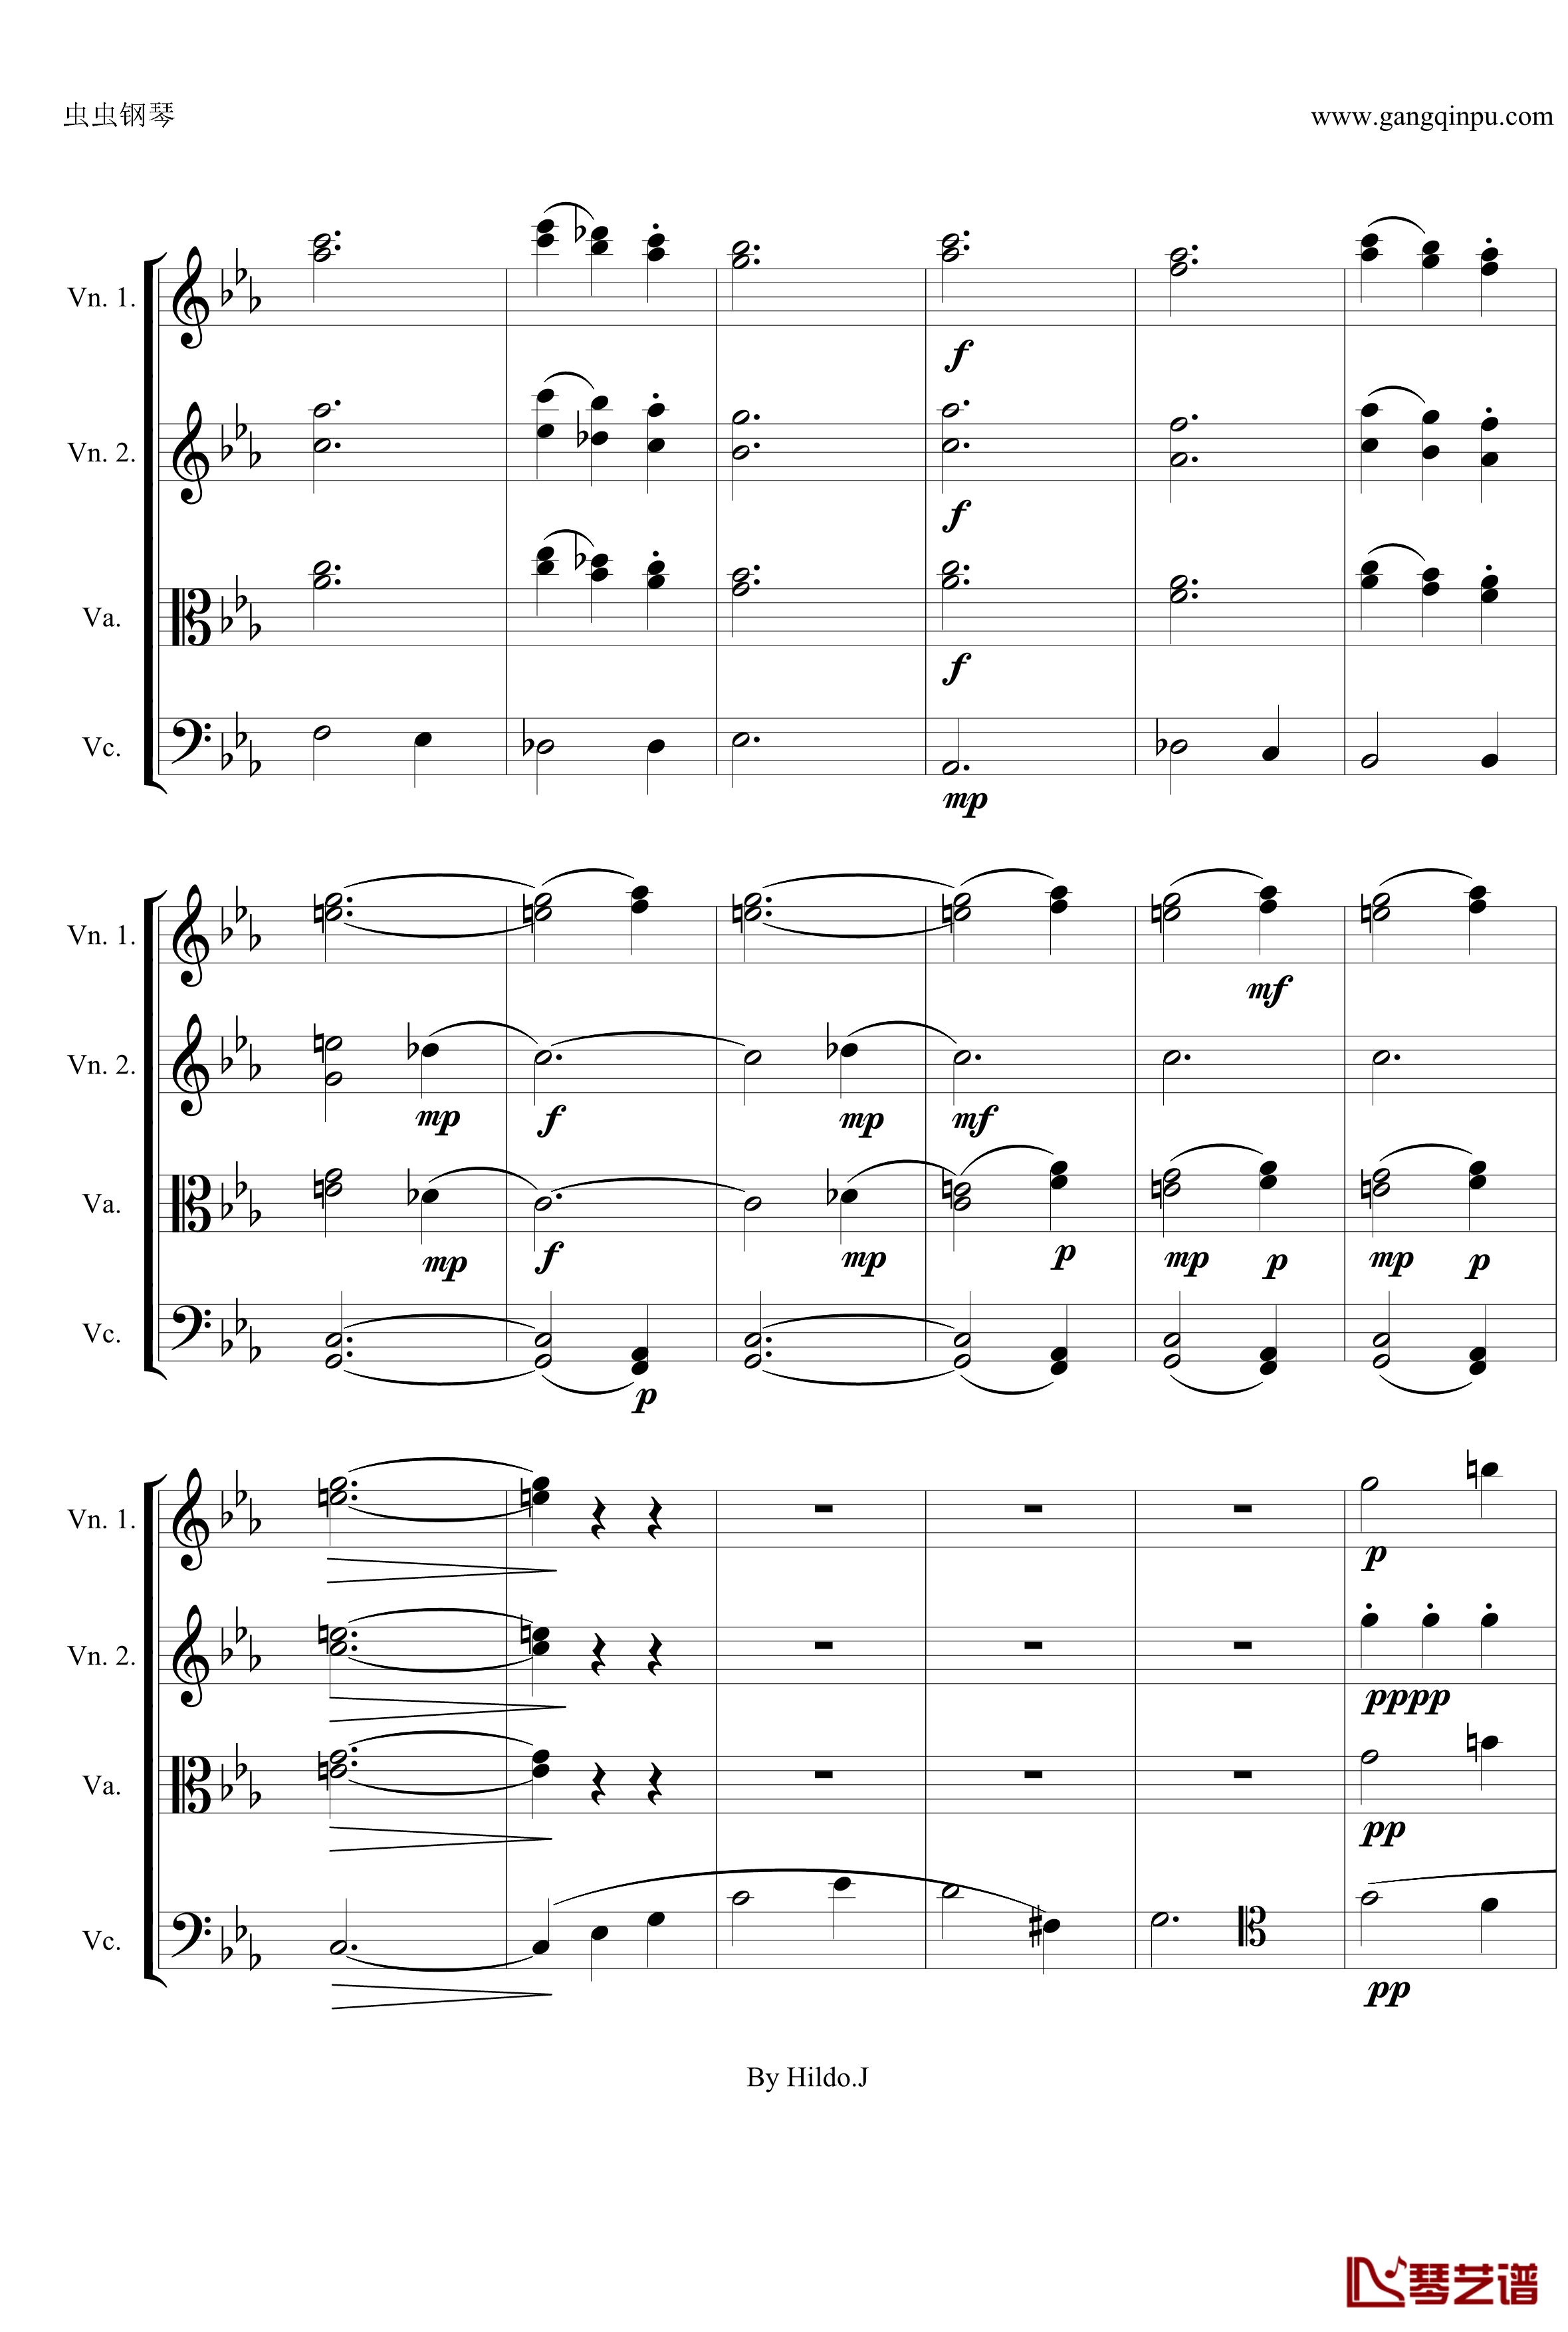 命运交响曲第三乐章钢琴谱-弦乐版-贝多芬-beethoven7